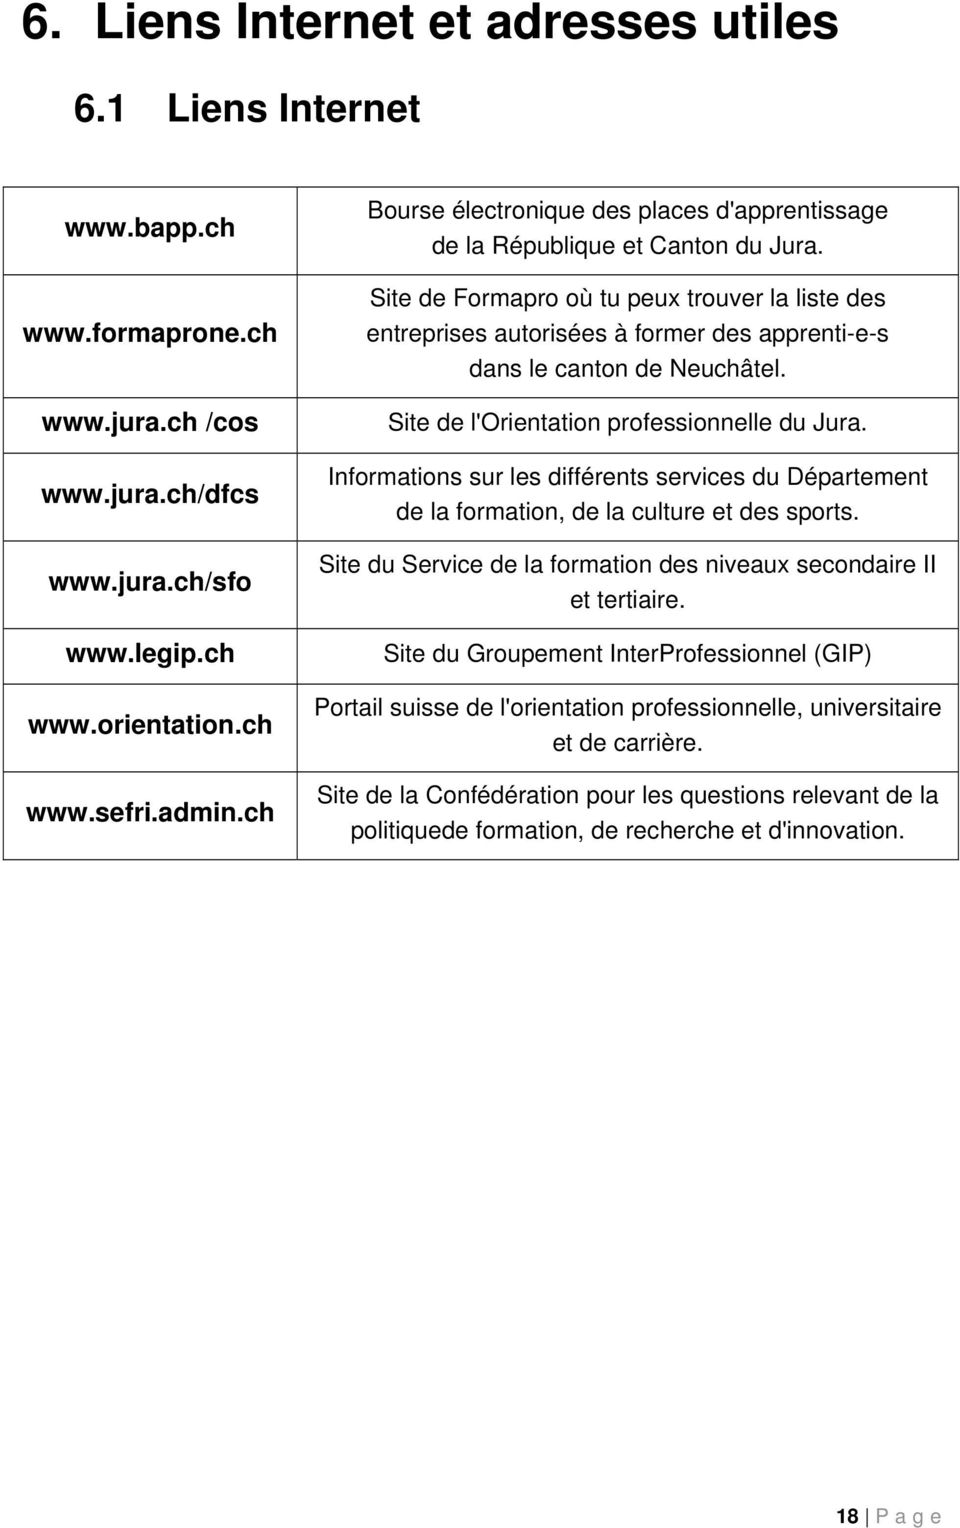 Site de Formapro où tu peux trouver la liste des entreprises autorisées à former des apprenti-e-s dans le canton de Neuchâtel. Site de l'orientation professionnelle du Jura.